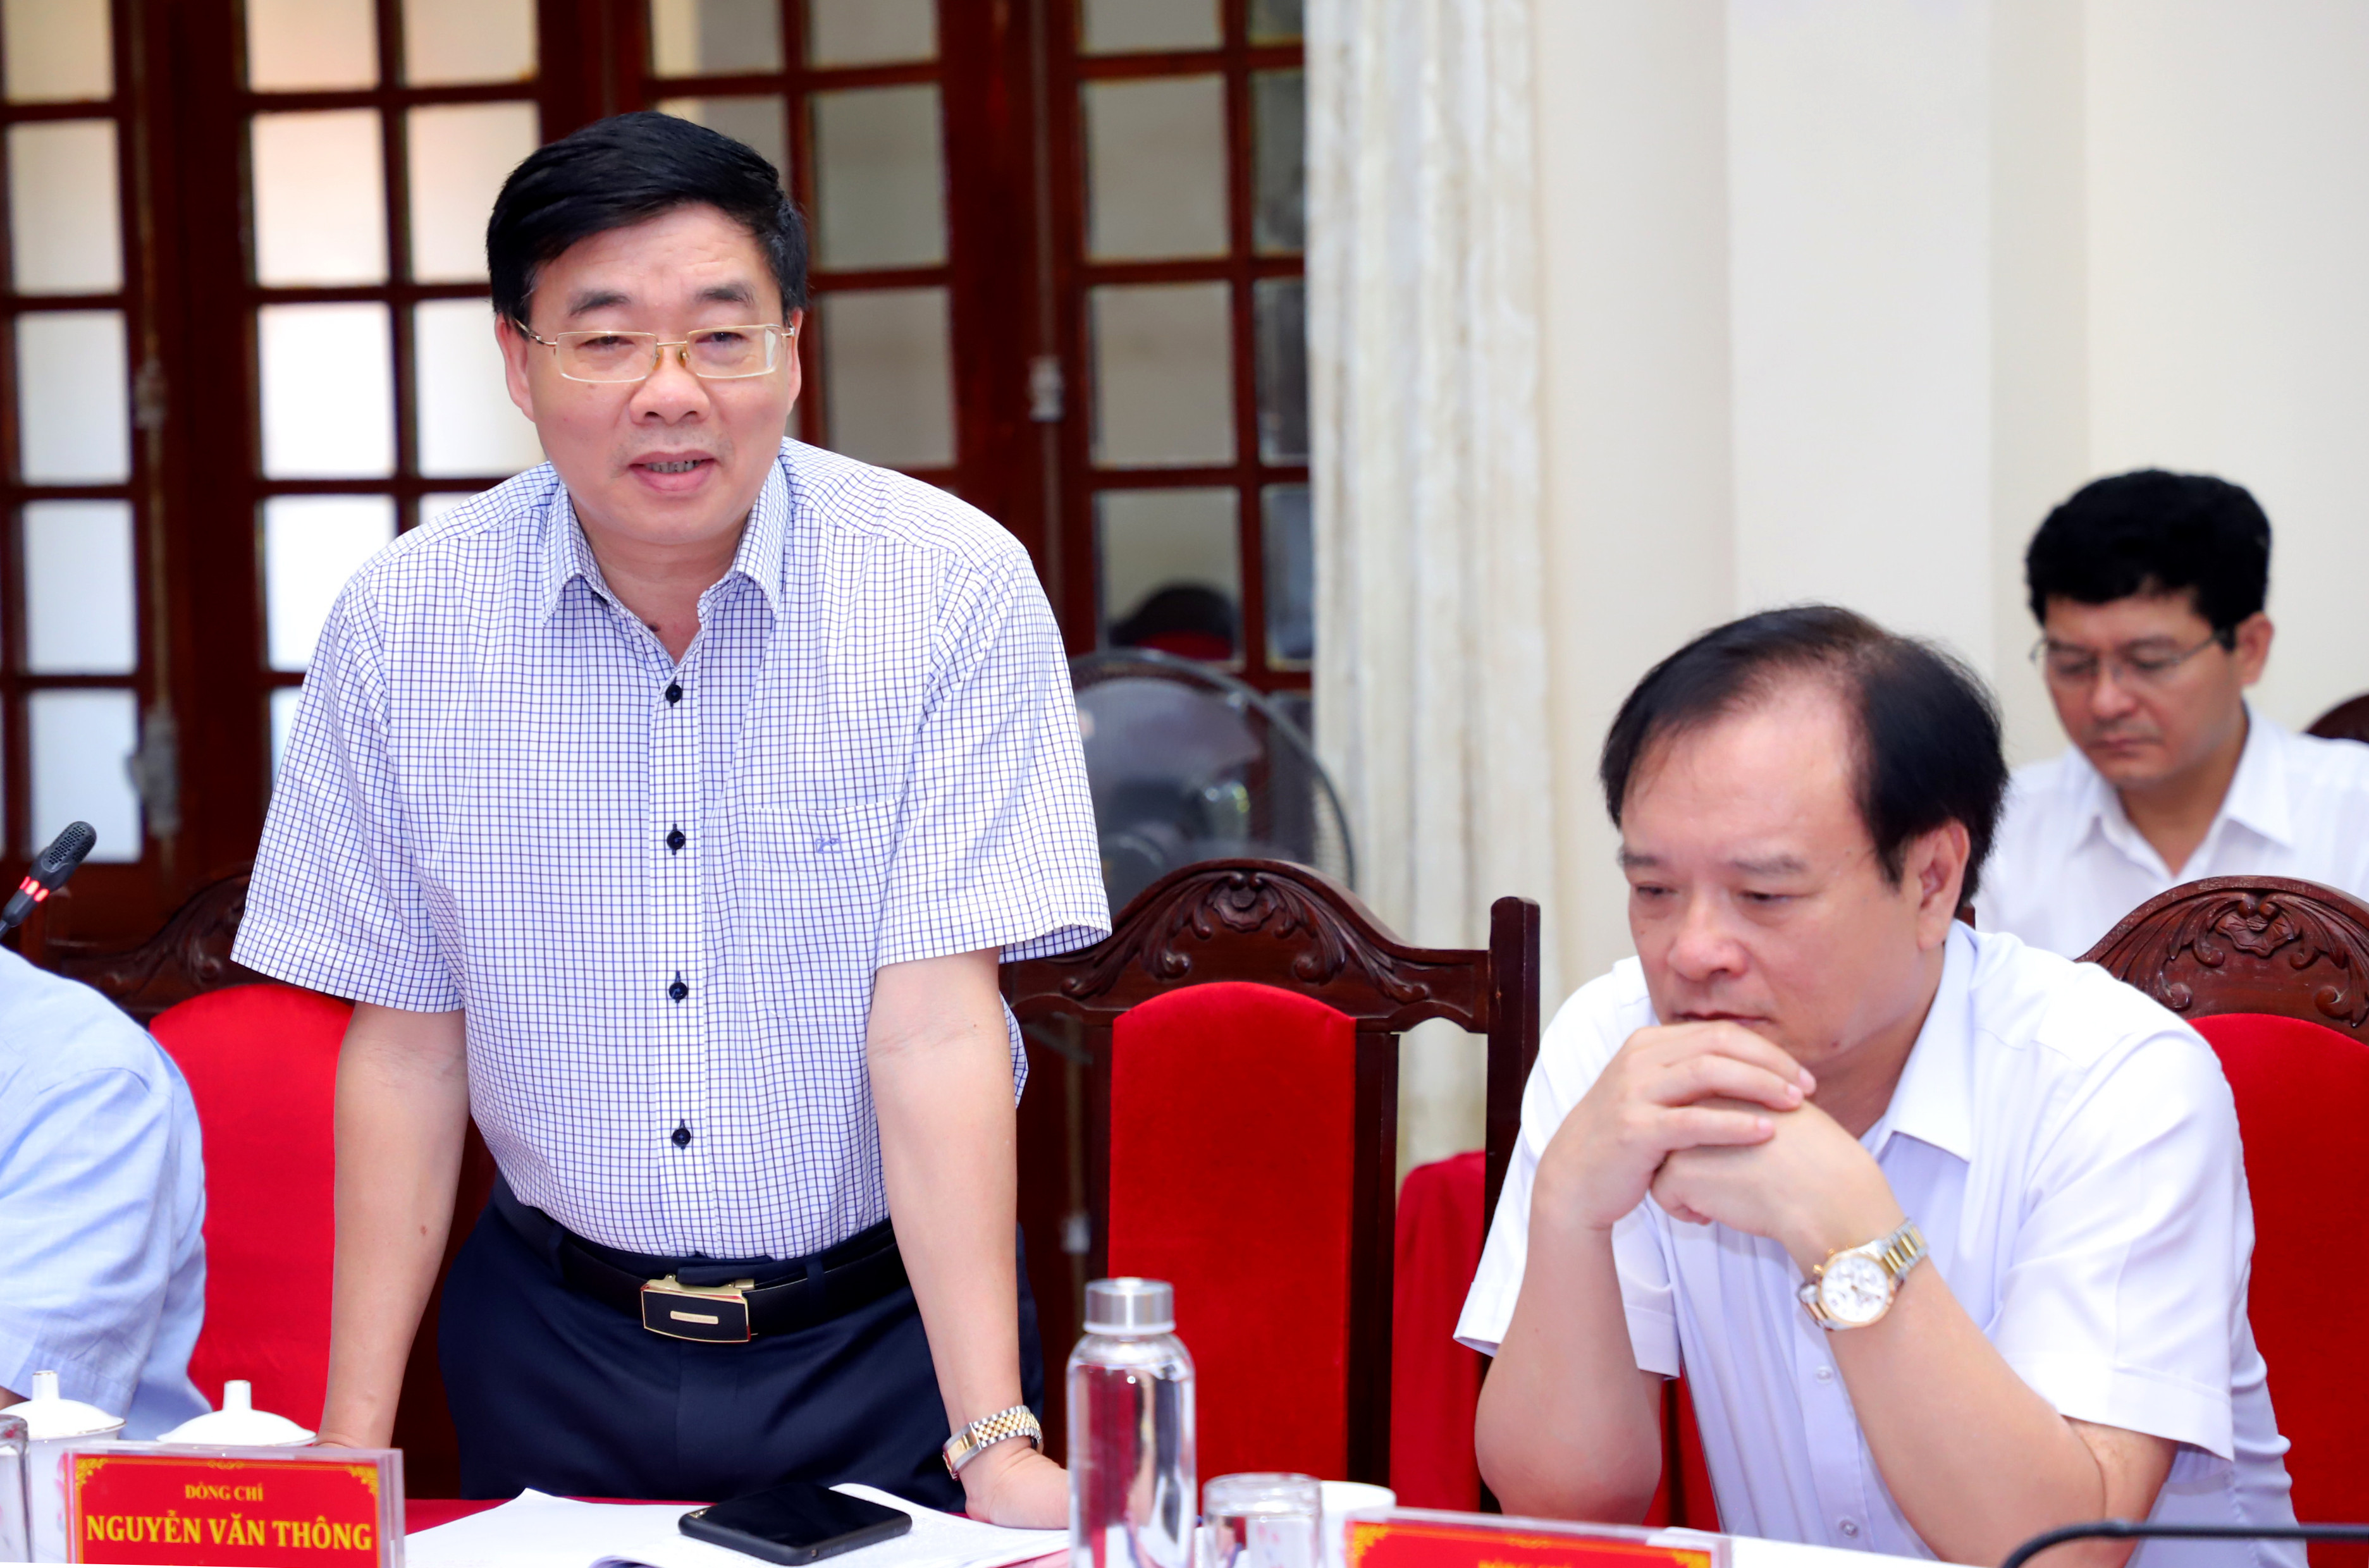 Đồng chí Nguyễn Văn Thông - Phó Bí thư Tỉnh ủy phát biểu tại cuộc làm việc. Ảnh: Thành Duy